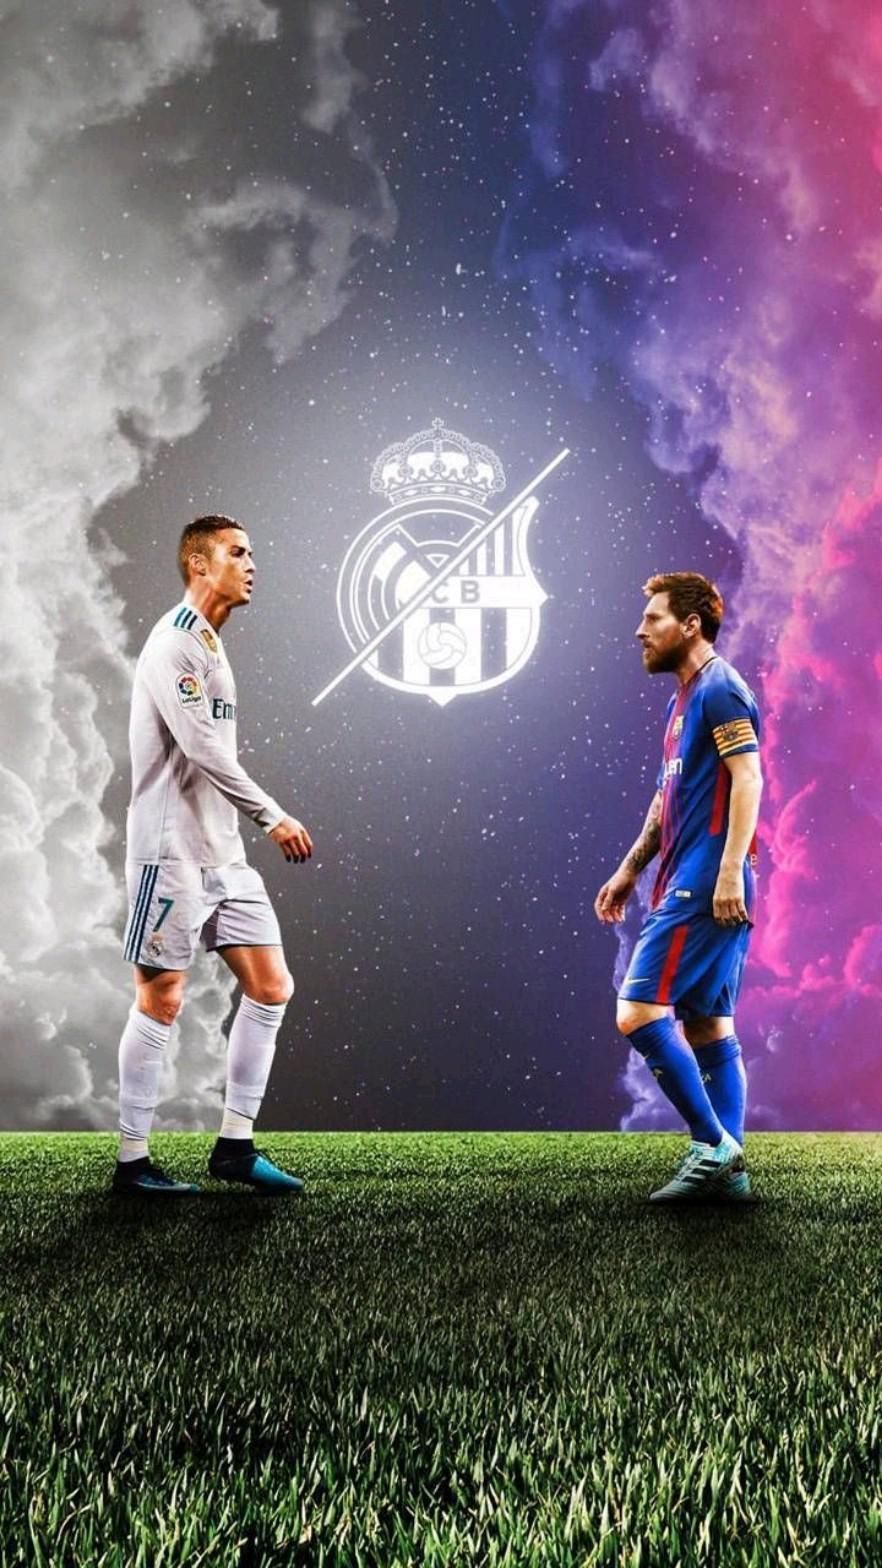 Ronaldo and Messi Wallpapers - Các fan hâm mộ của Ronaldo và Messi chắc chắn sẽ không muốn bỏ lỡ những hình nền độc đáo về hai siêu sao này. Hãy xem những hình ảnh nghệ thuật về Ronaldo và Messi để cập nhật tin tức mới nhất về hai ngôi sao bóng đá này.